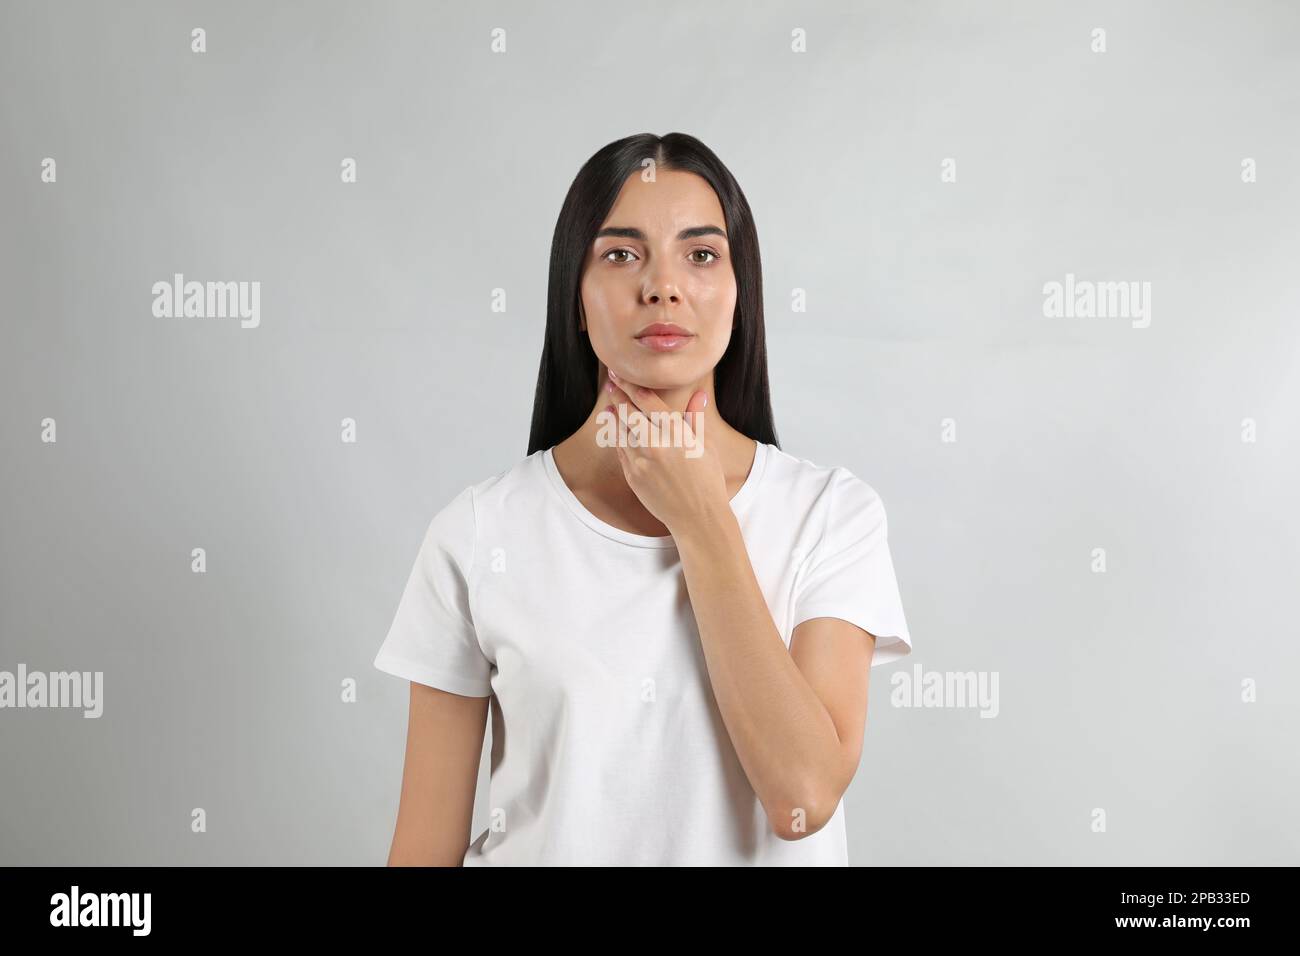 Junge Frau, die Schilddrüsen-Selbstuntersuchung vor hellem Hintergrund durchführt Stockfoto